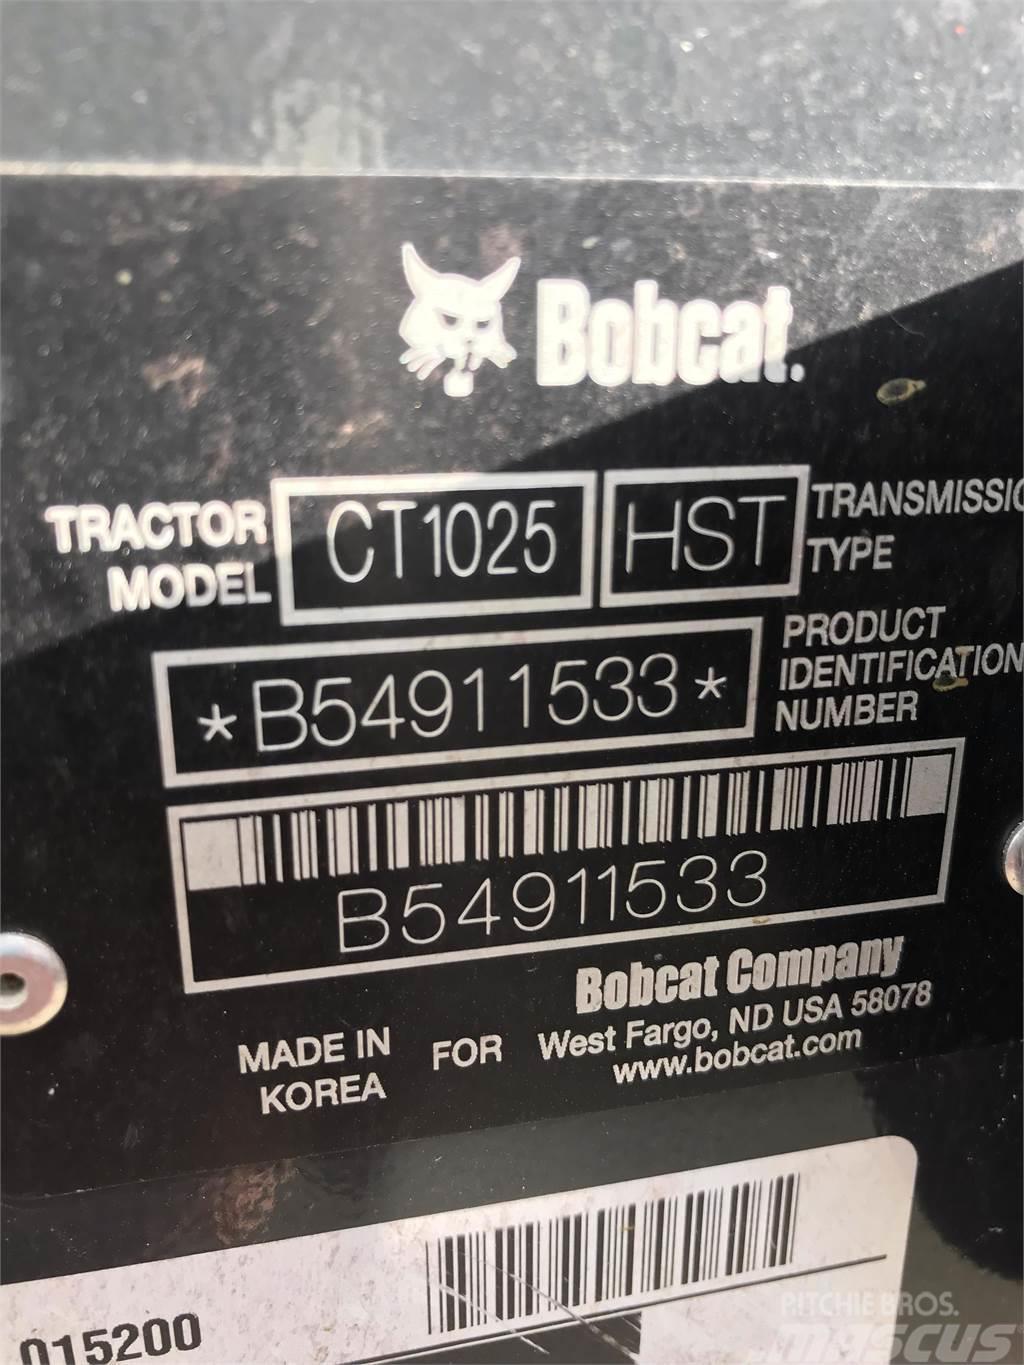 Bobcat CT1025 Compact tractors